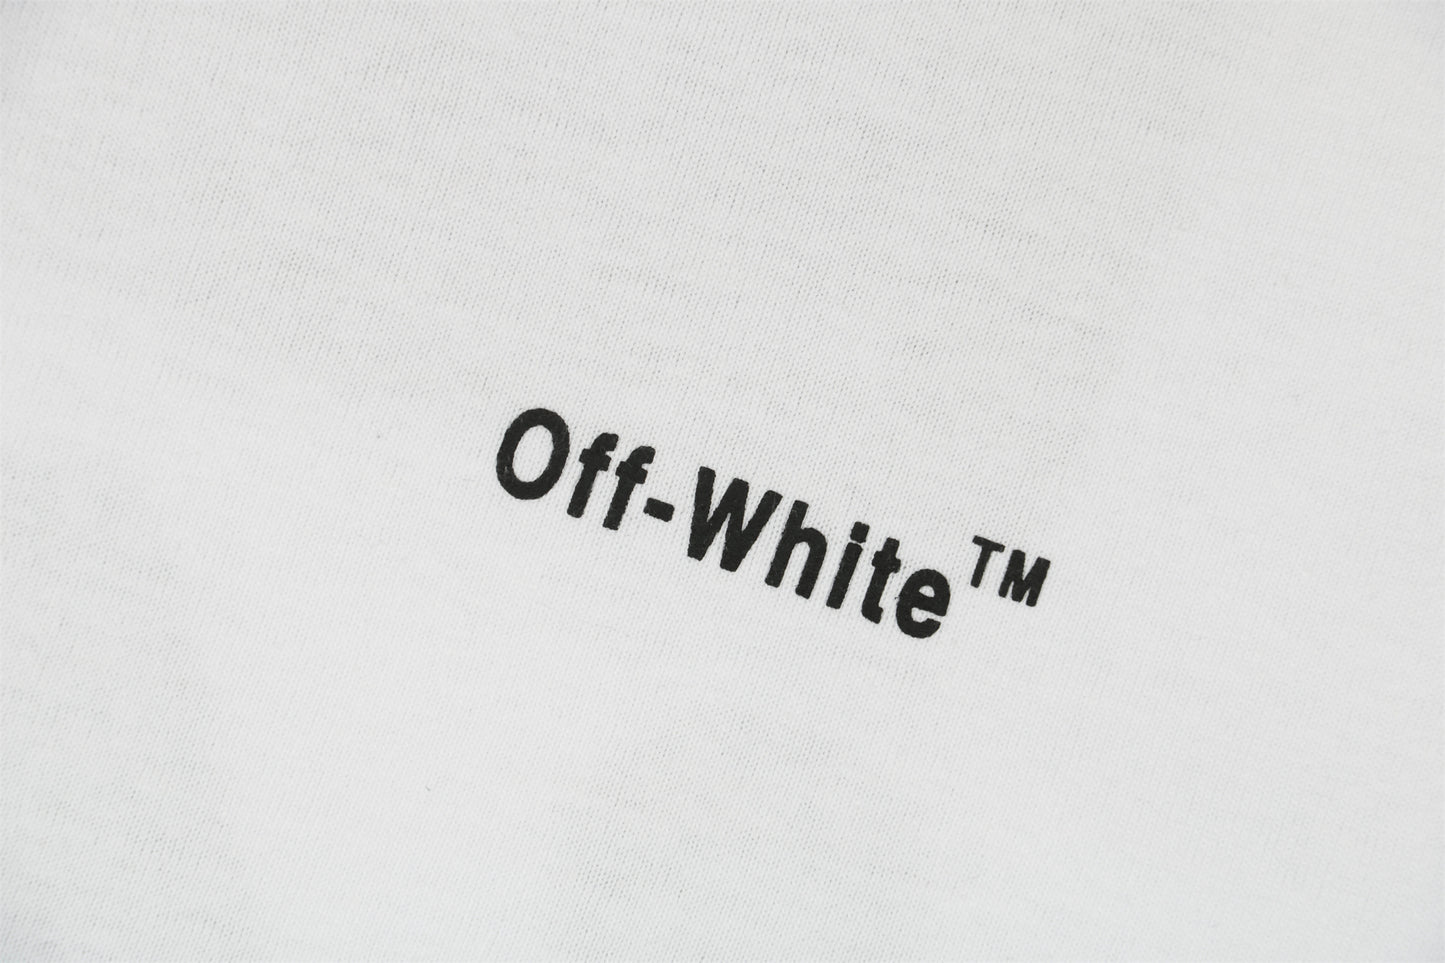 OW White T-Shirt 3